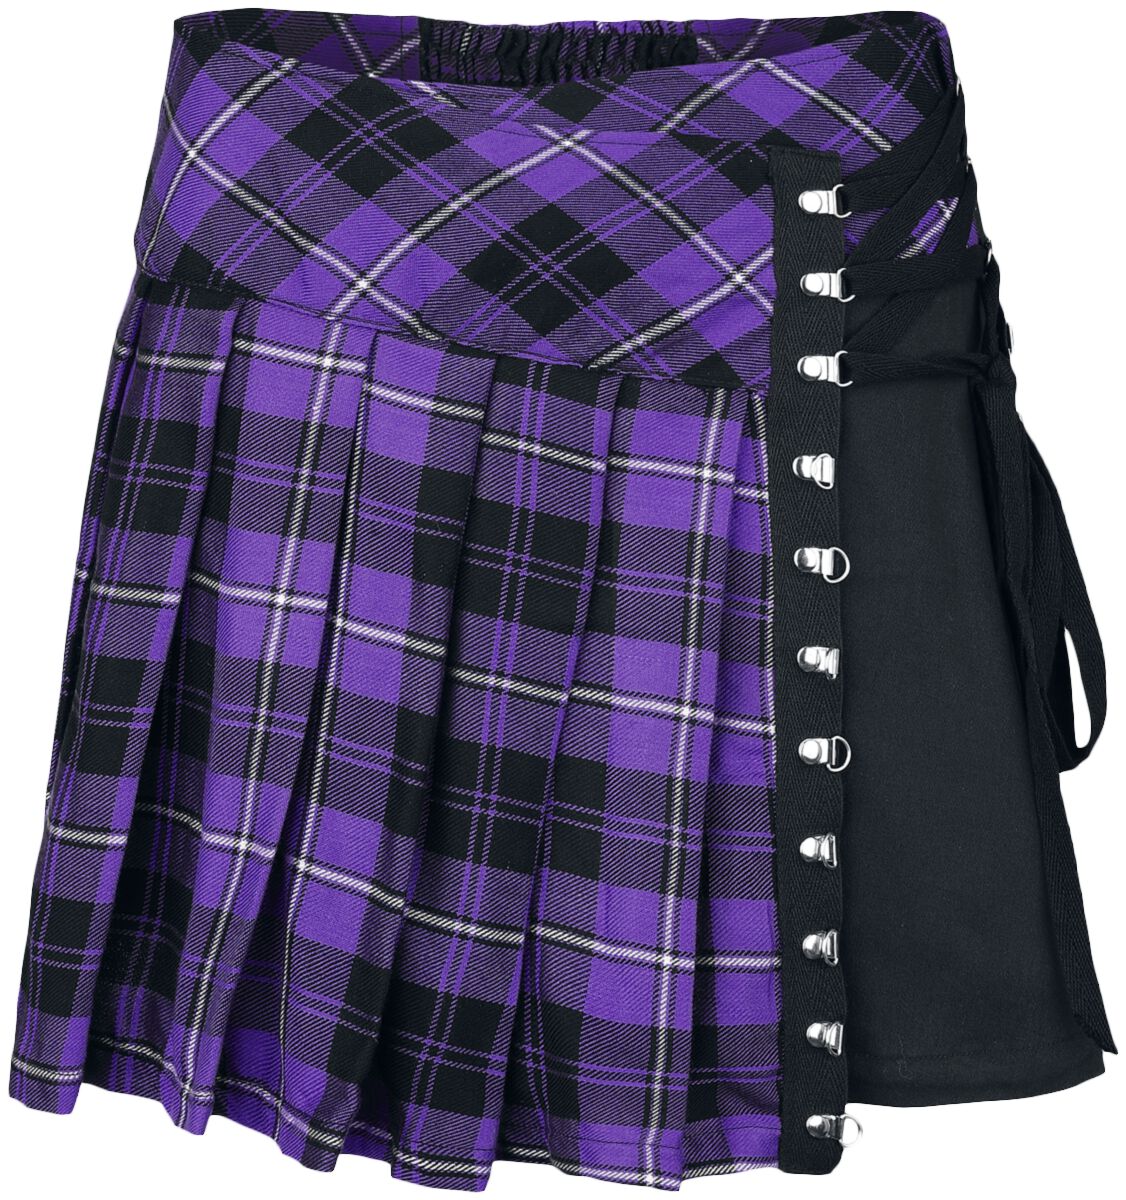 Chemical Black Hybrid Skirt Kurzer Rock lila schwarz in S